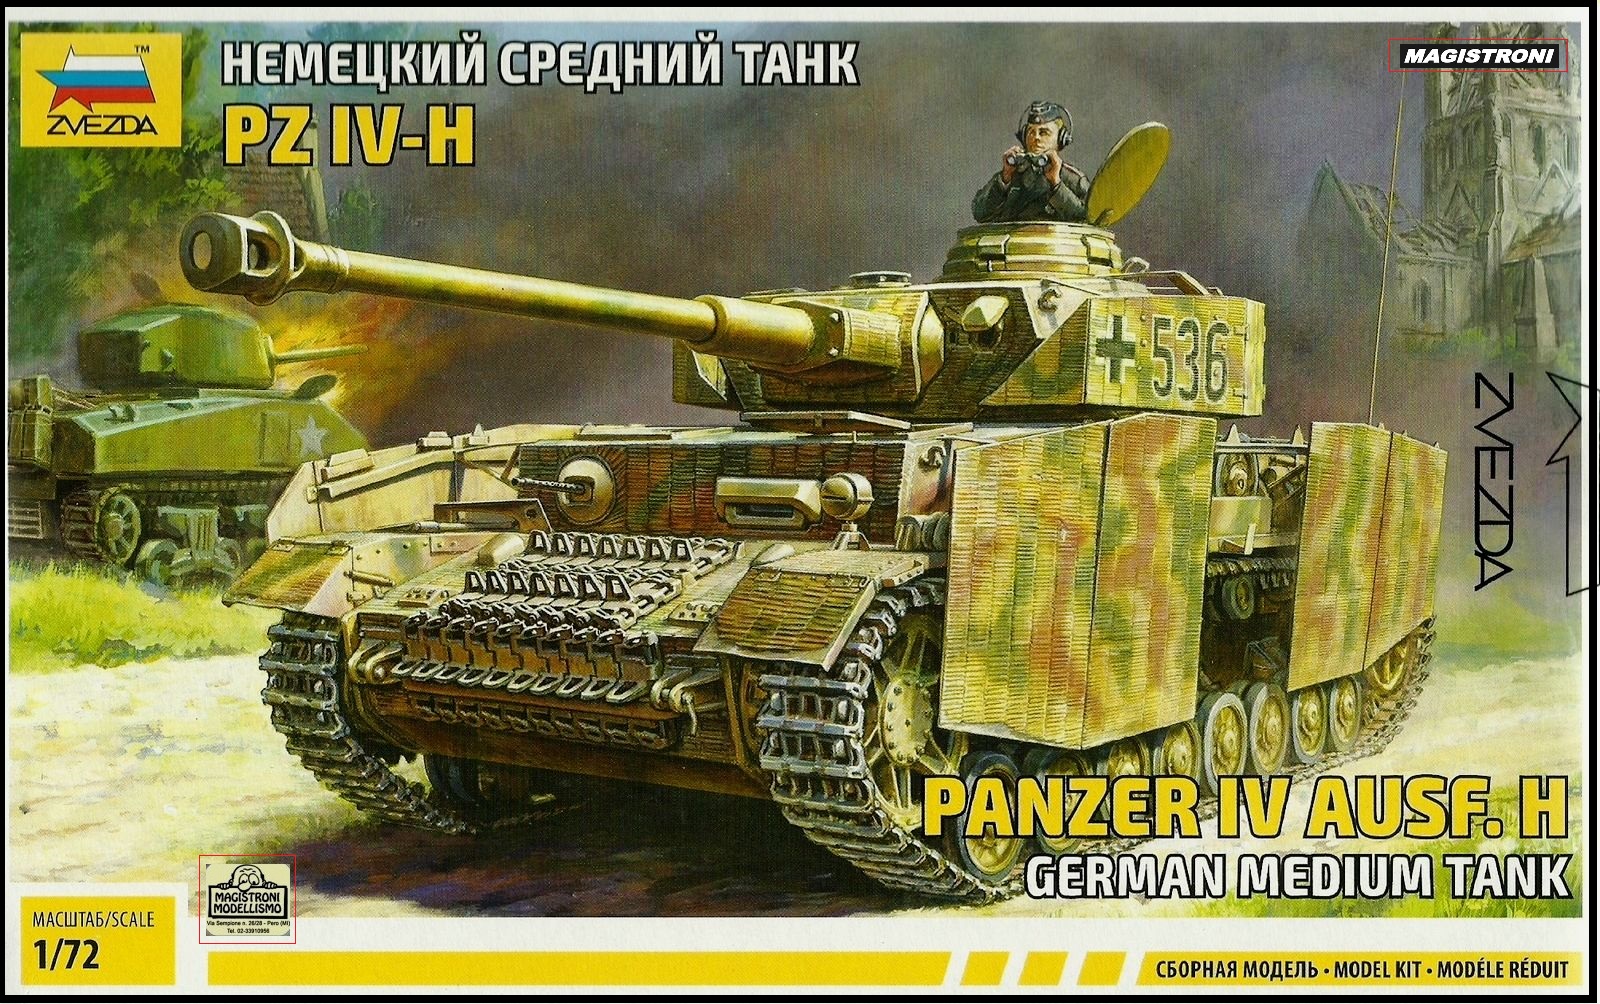 German Medium tank PANZER IV AUSF.H